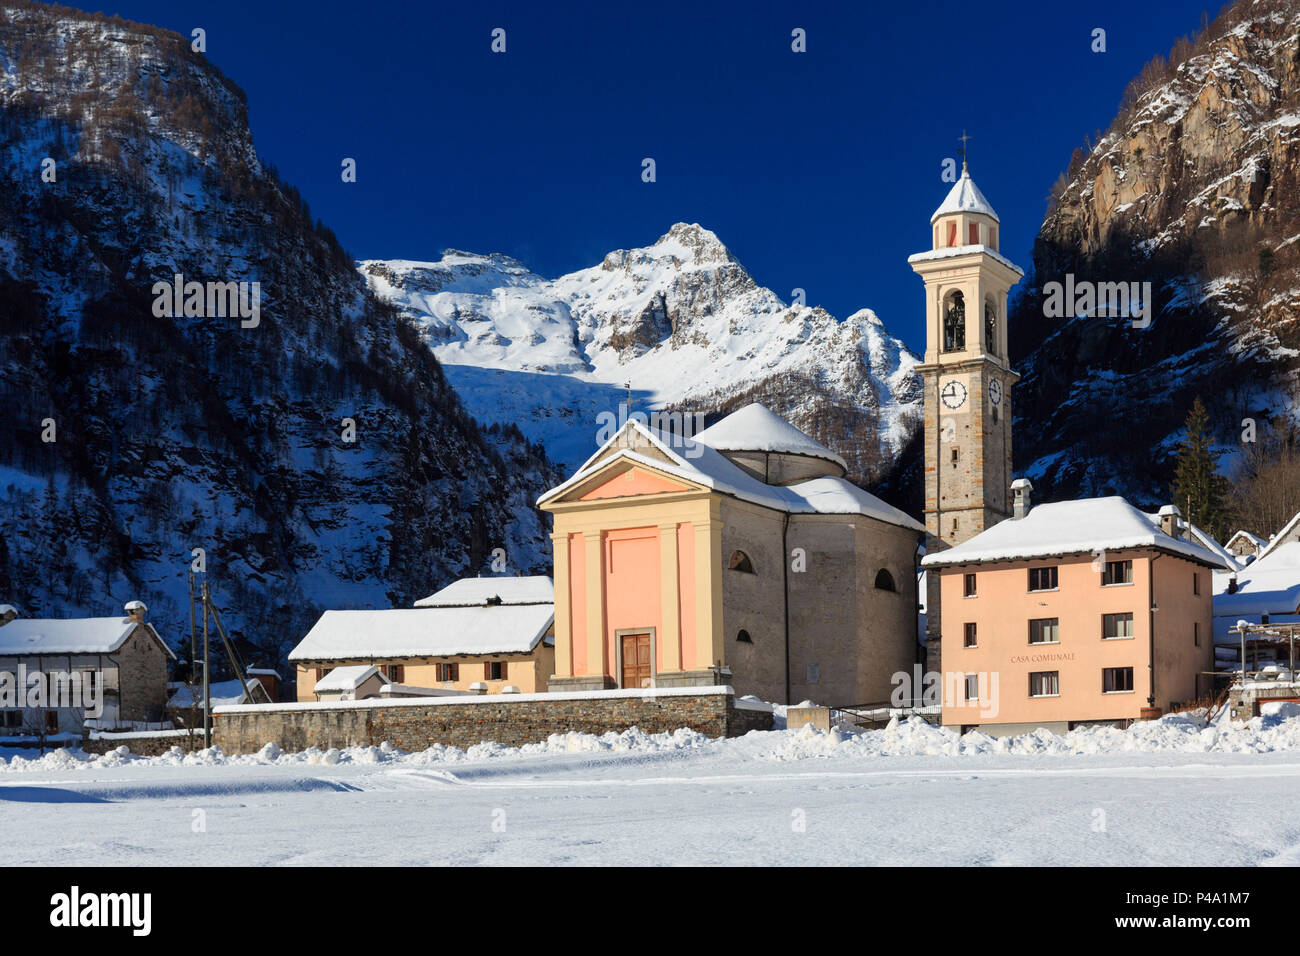 La chiesa del villaggio Sonogno in inverno con il Monte Zucchero in background, Sonogno, in Val Verzasca, Canton Ticino, Svizzera, Europa Foto Stock